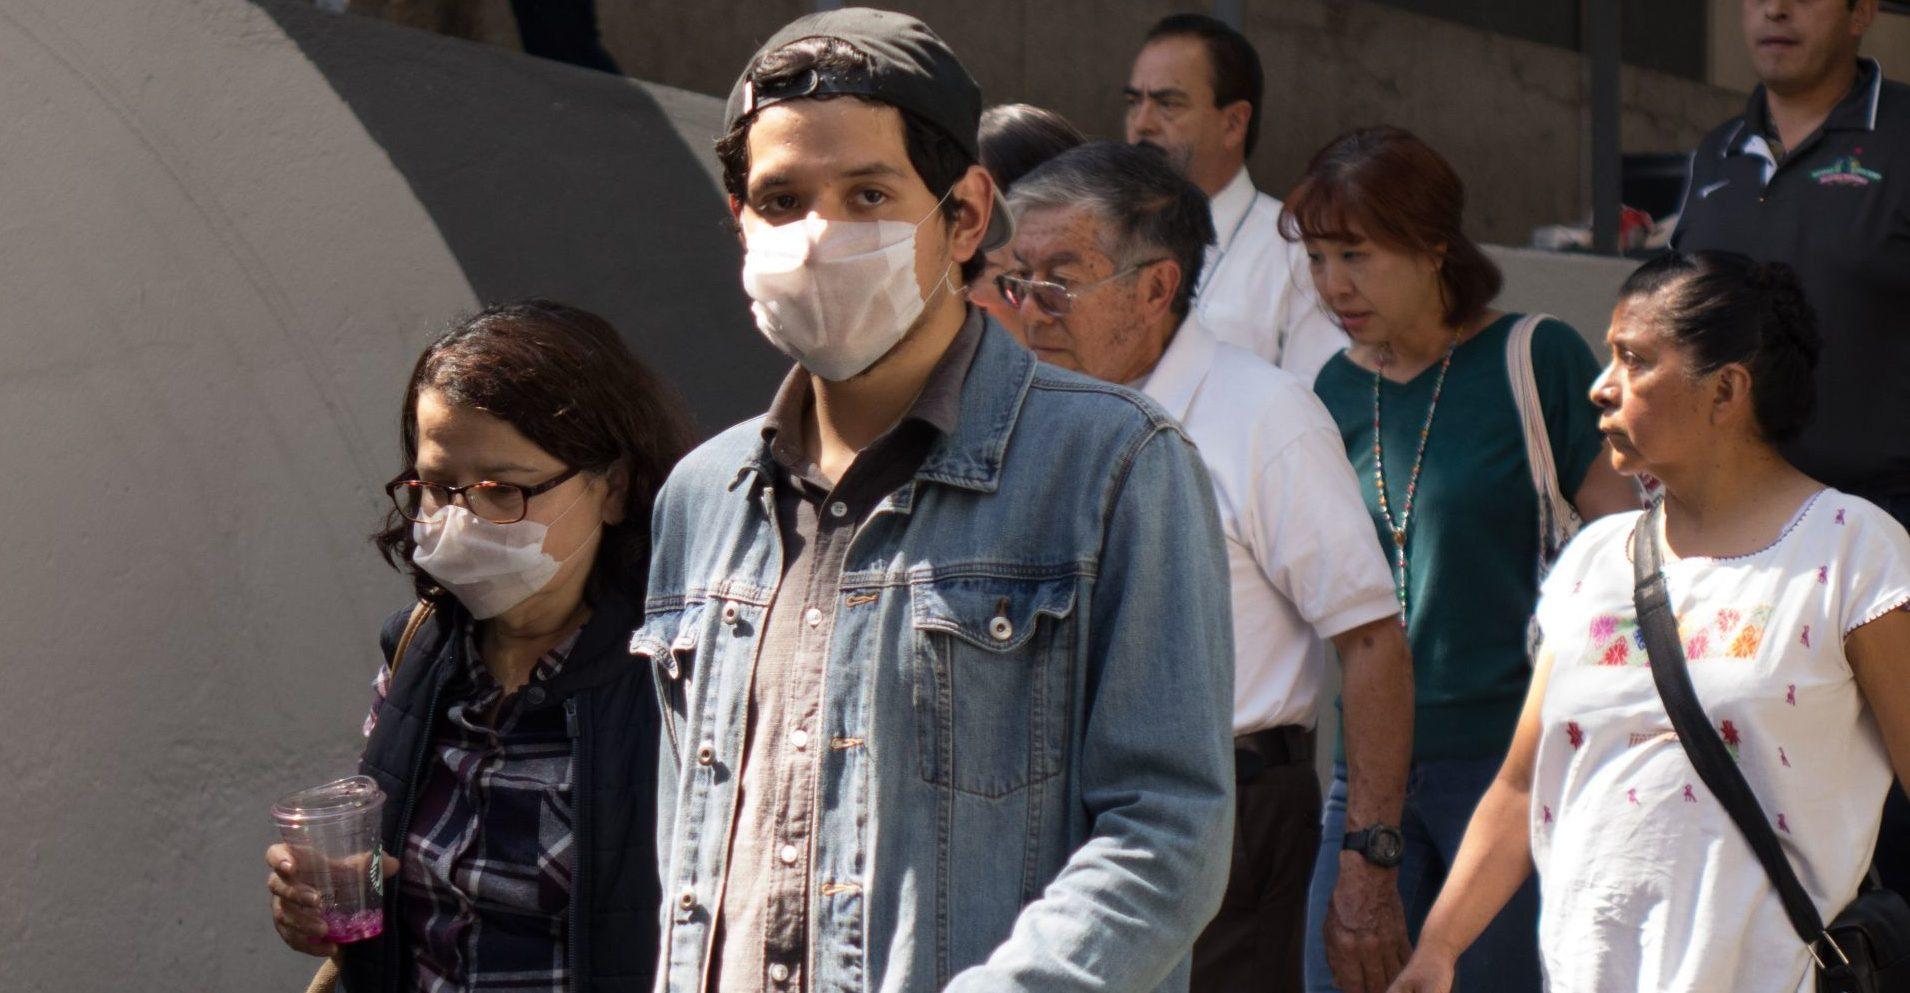 Coronavirus: Países cierran fronteras y cancelan eventos; México decide mantener precauciones básicas